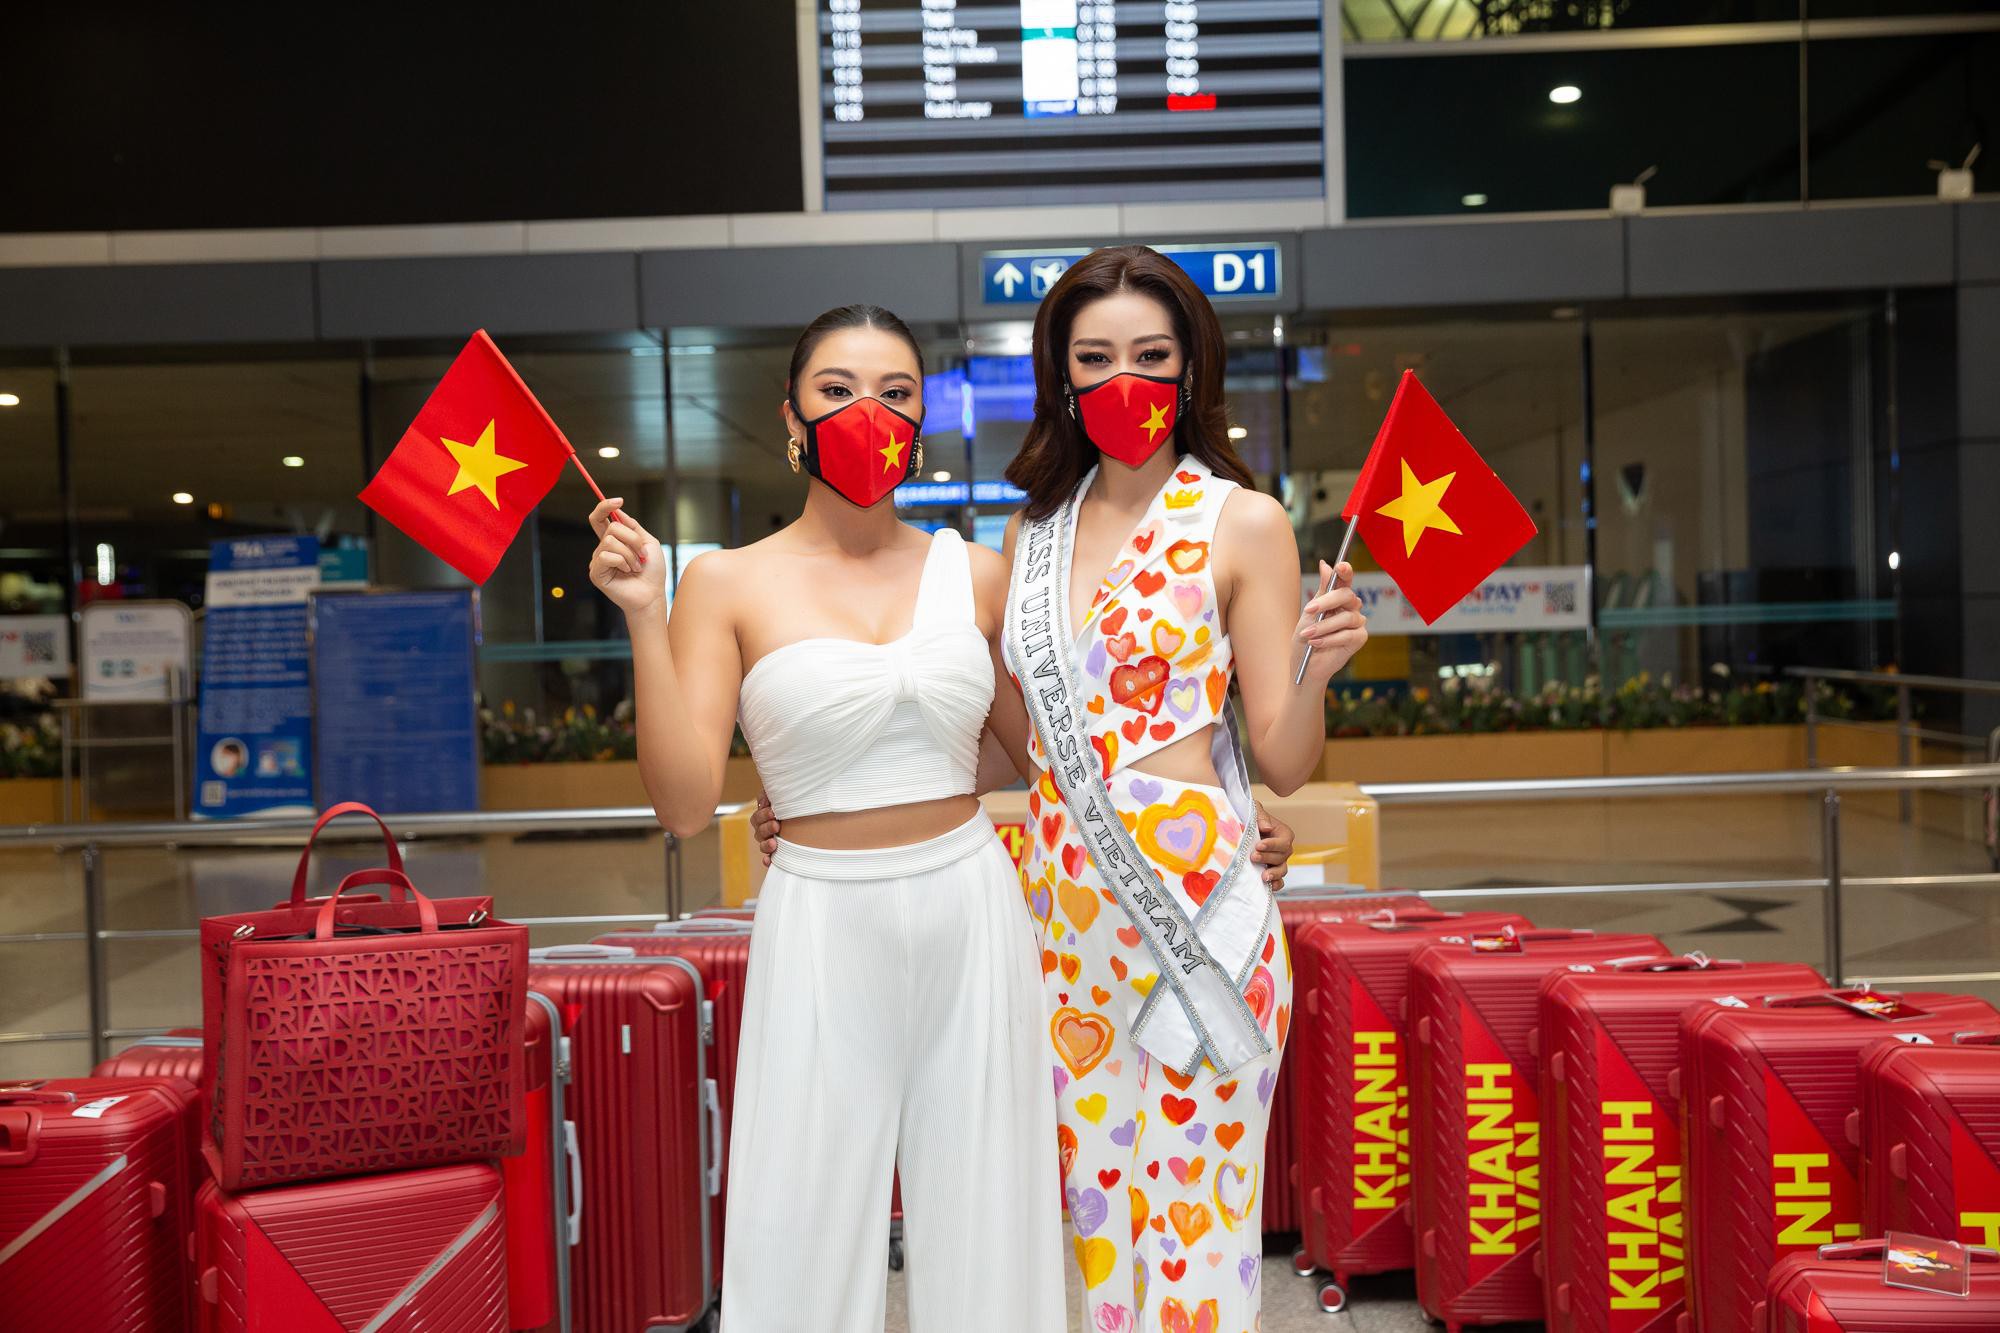 Hoa hậu Khánh Vân liên tục biến hóa phong cách thời trang sân bay khi lên đường sang Mỹ dự thi Miss Universe 2020 - Ảnh 8.